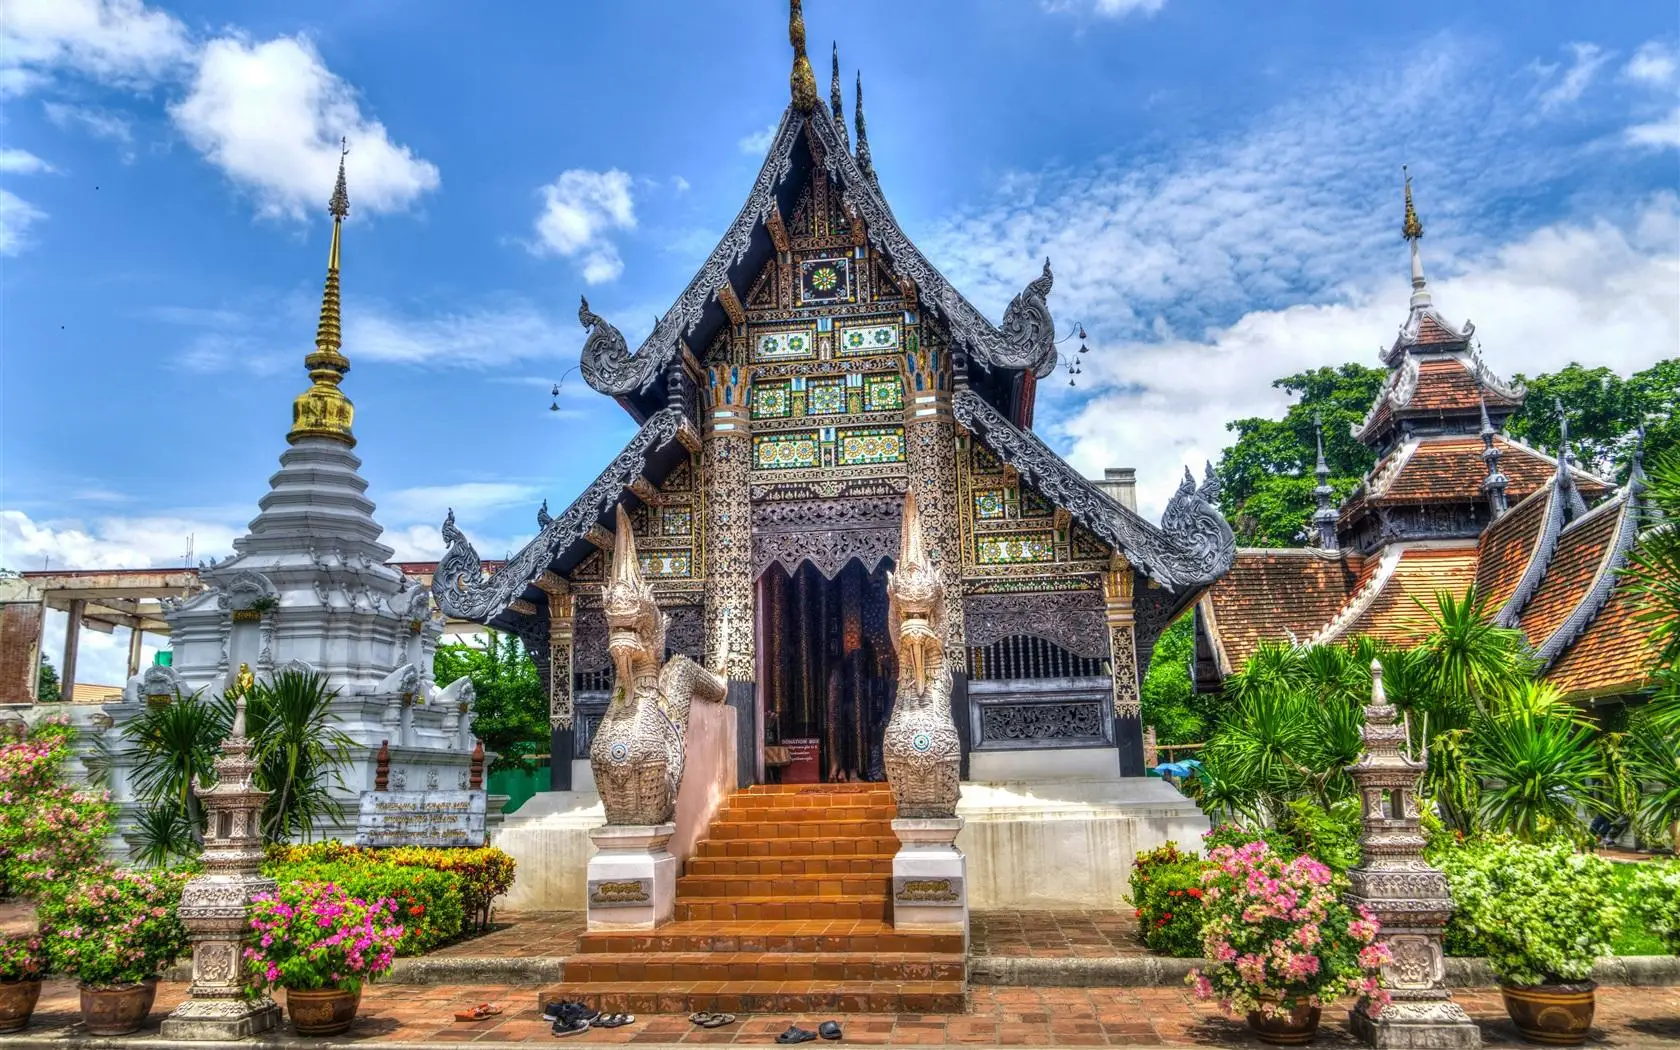 Азия, Тайланд, Окачване на Буда Успех, храмов амулет, благословляющий безопасността, здравето, късмета, Привличането на богатство, всемогъщ талисман